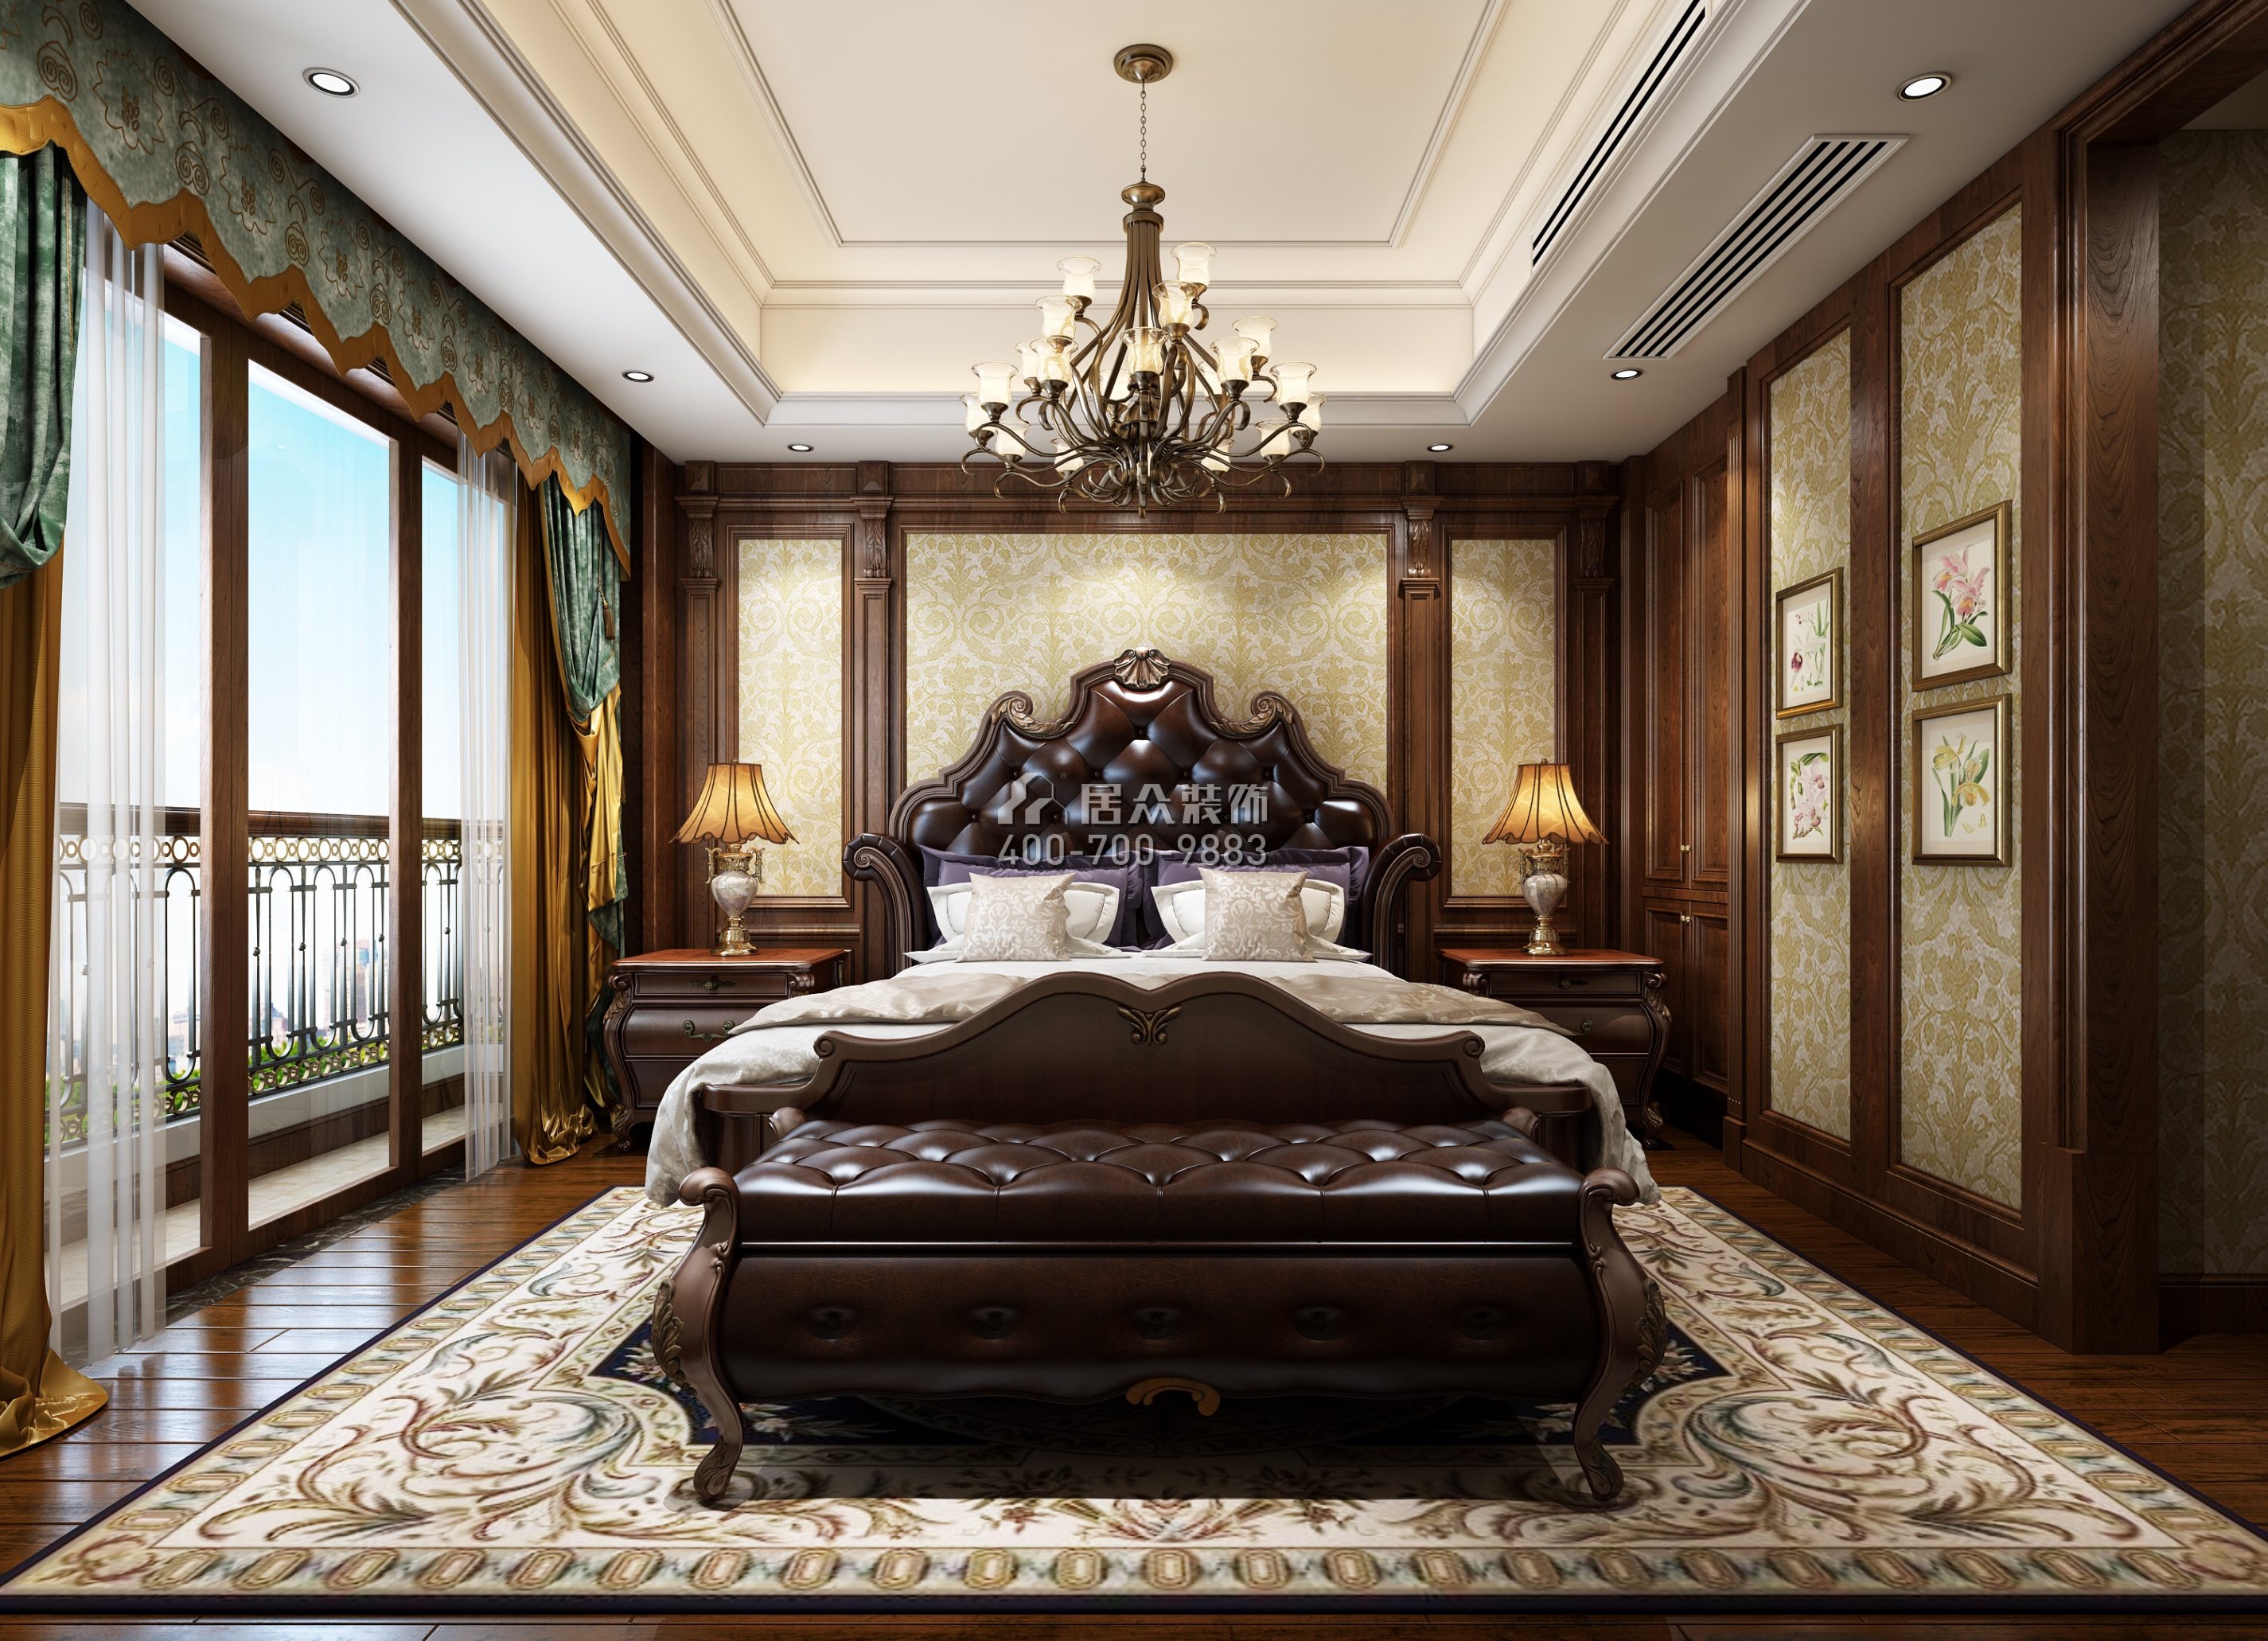 南山意境480平方米美式风格复式户型卧室装修效果图